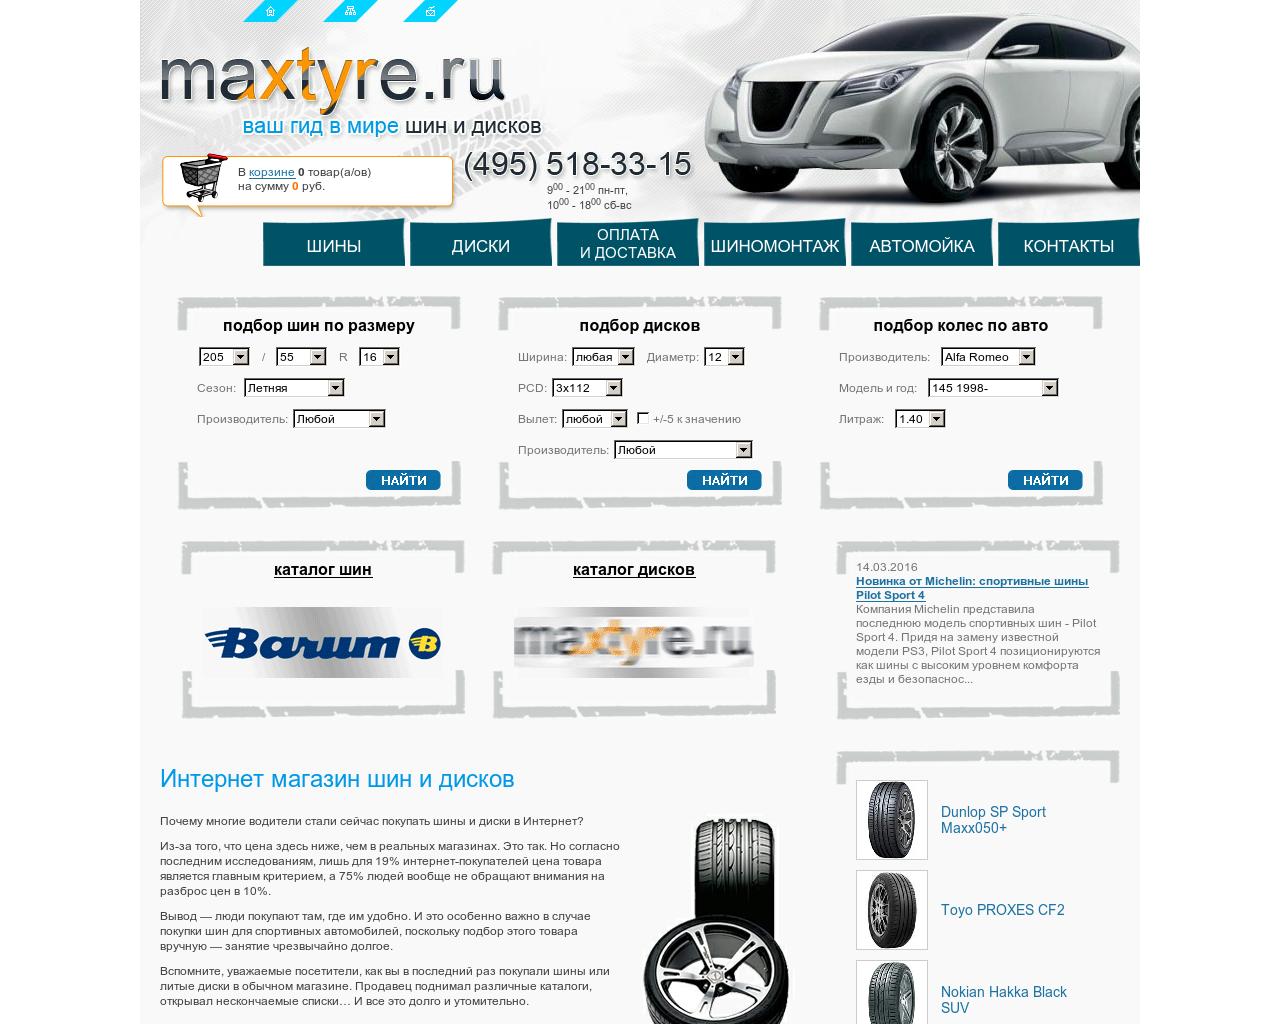 Изображение сайта maxtyre.ru в разрешении 1280x1024